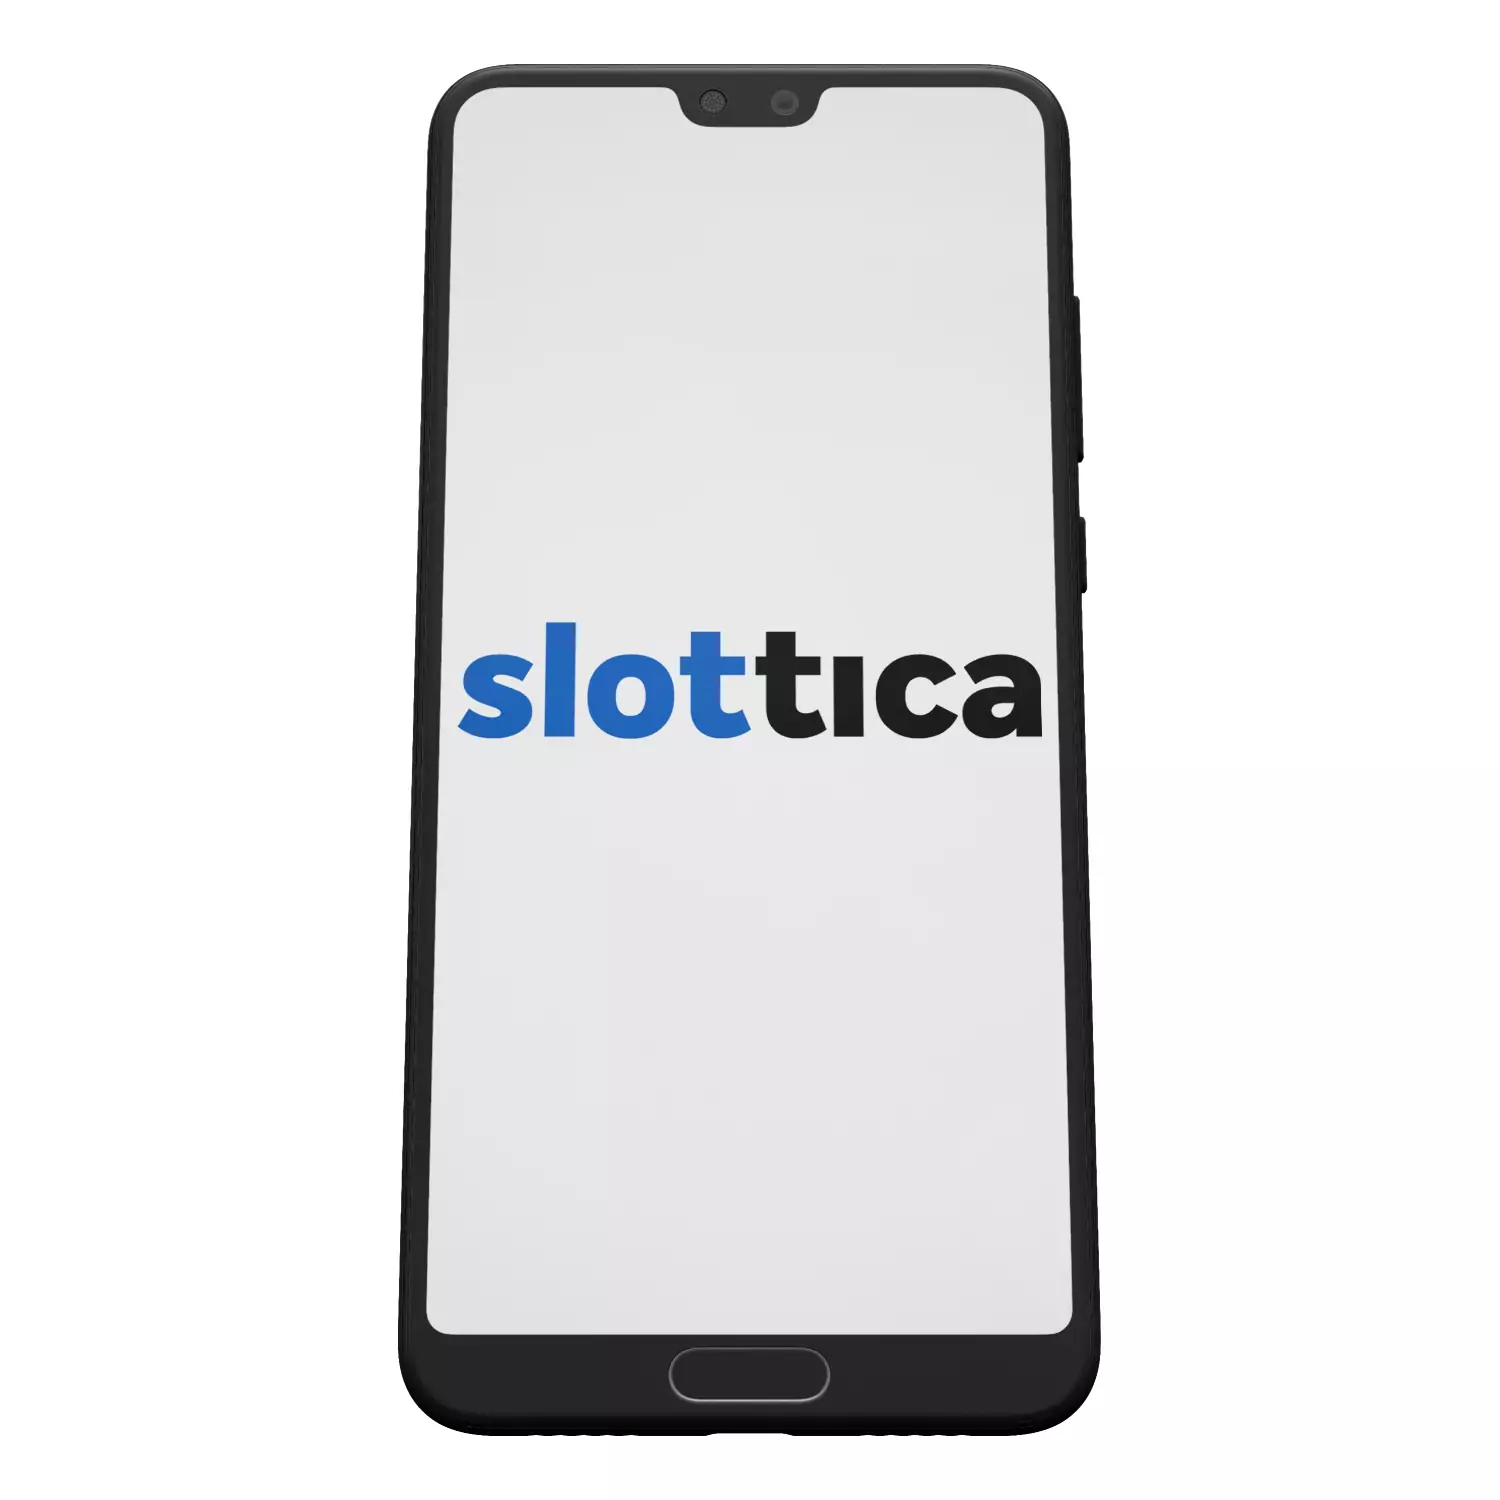 The Slottica app is in development.